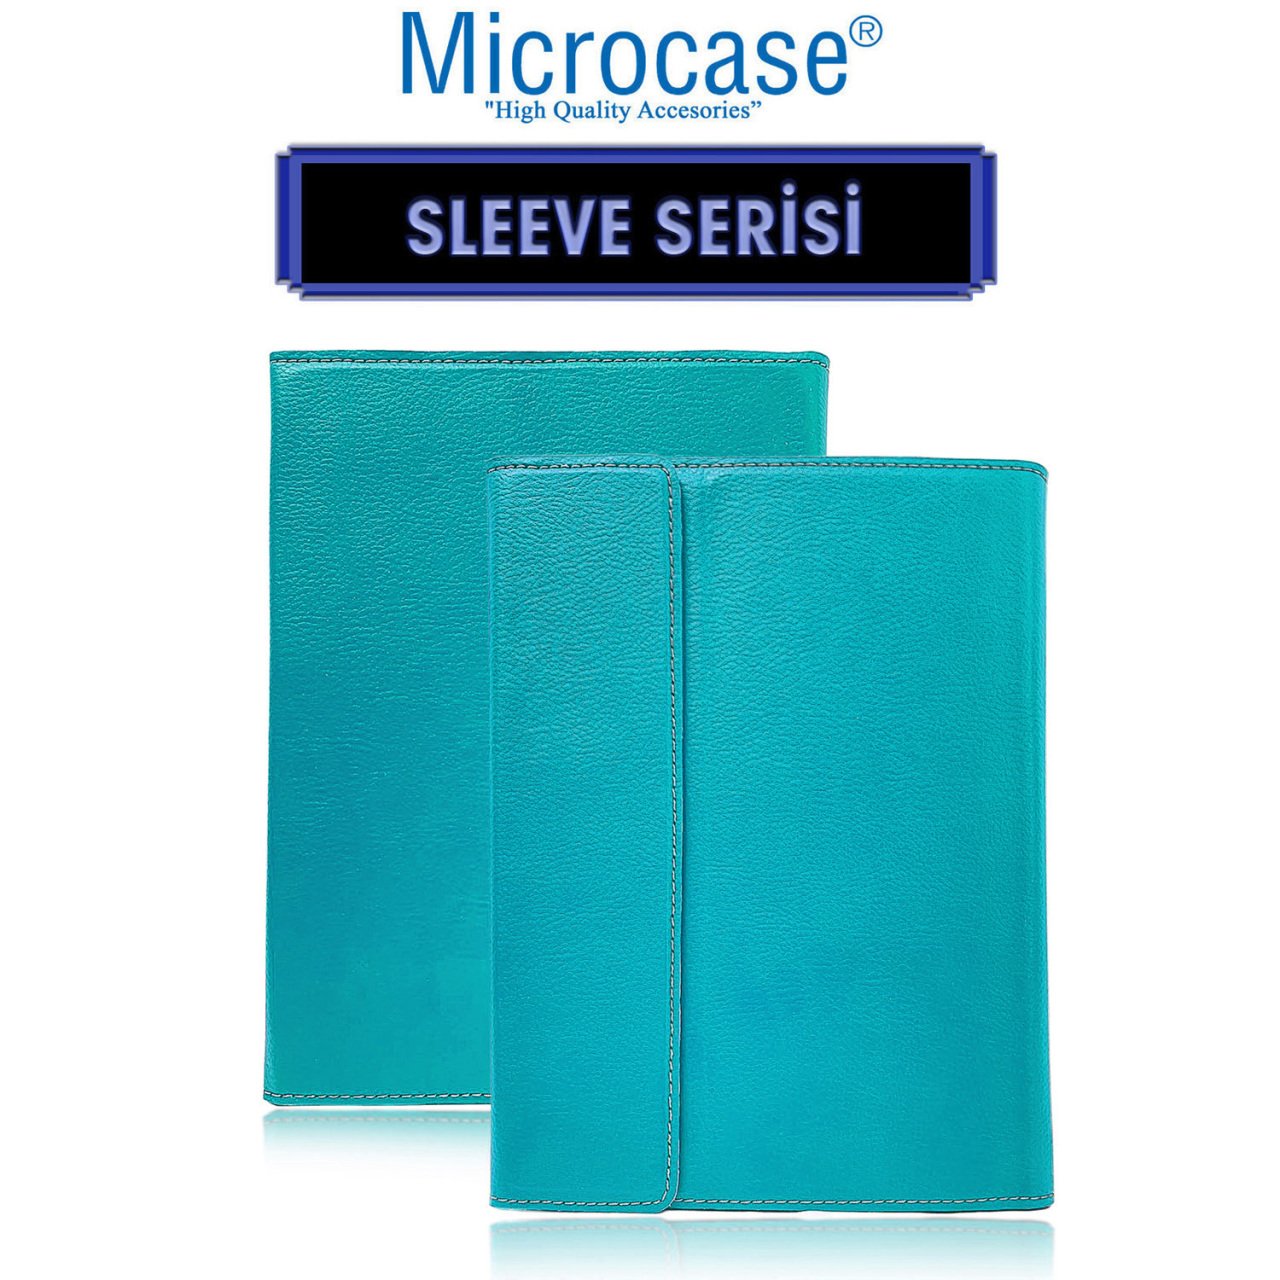 Microcase iPad 8.Nesil 10.2 inch 2020 Sleeve Serisi Mıknatıs Kapaklı Standlı Kılıf - Turkuaz